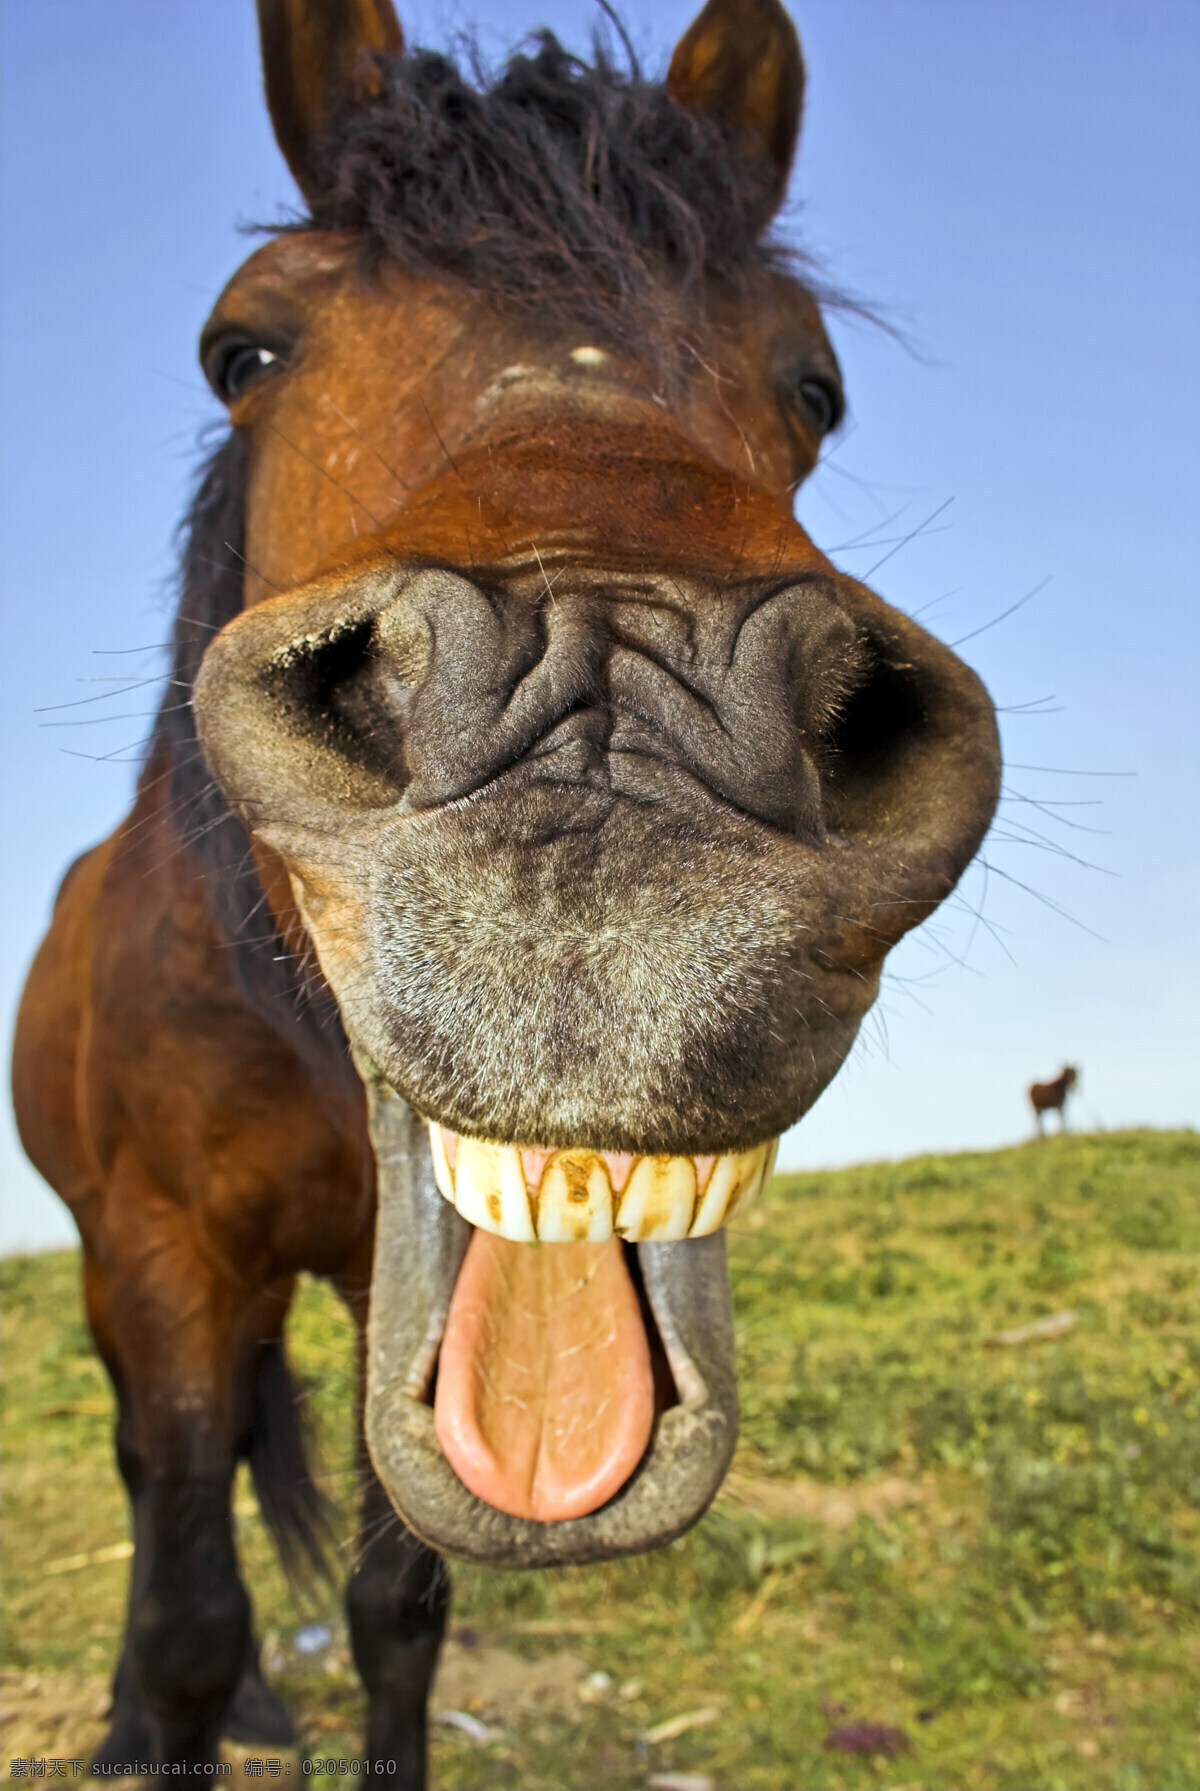 马匹 头部 嘴巴 特写 马 骏马 头部特定 嘴唇 舌头 牙齿 鼻子 草原 草地 大自然 动物 摄影图库 高清图片 陆地动物 生物世界